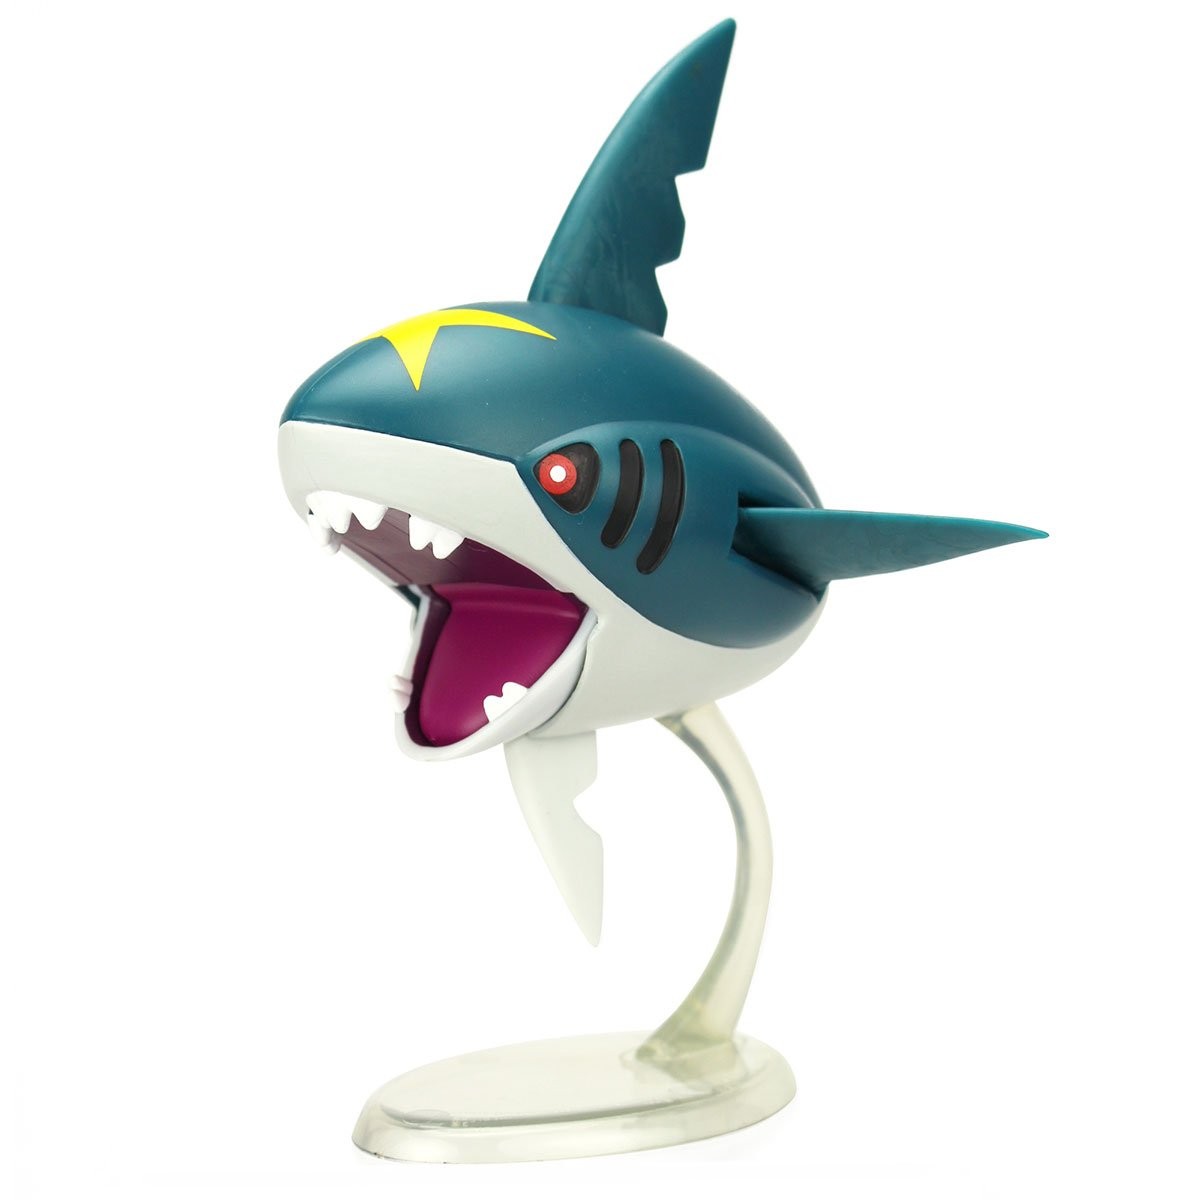 Figurine à fonctions Pokémon 12 cm Modèle aléatoire - Figurine